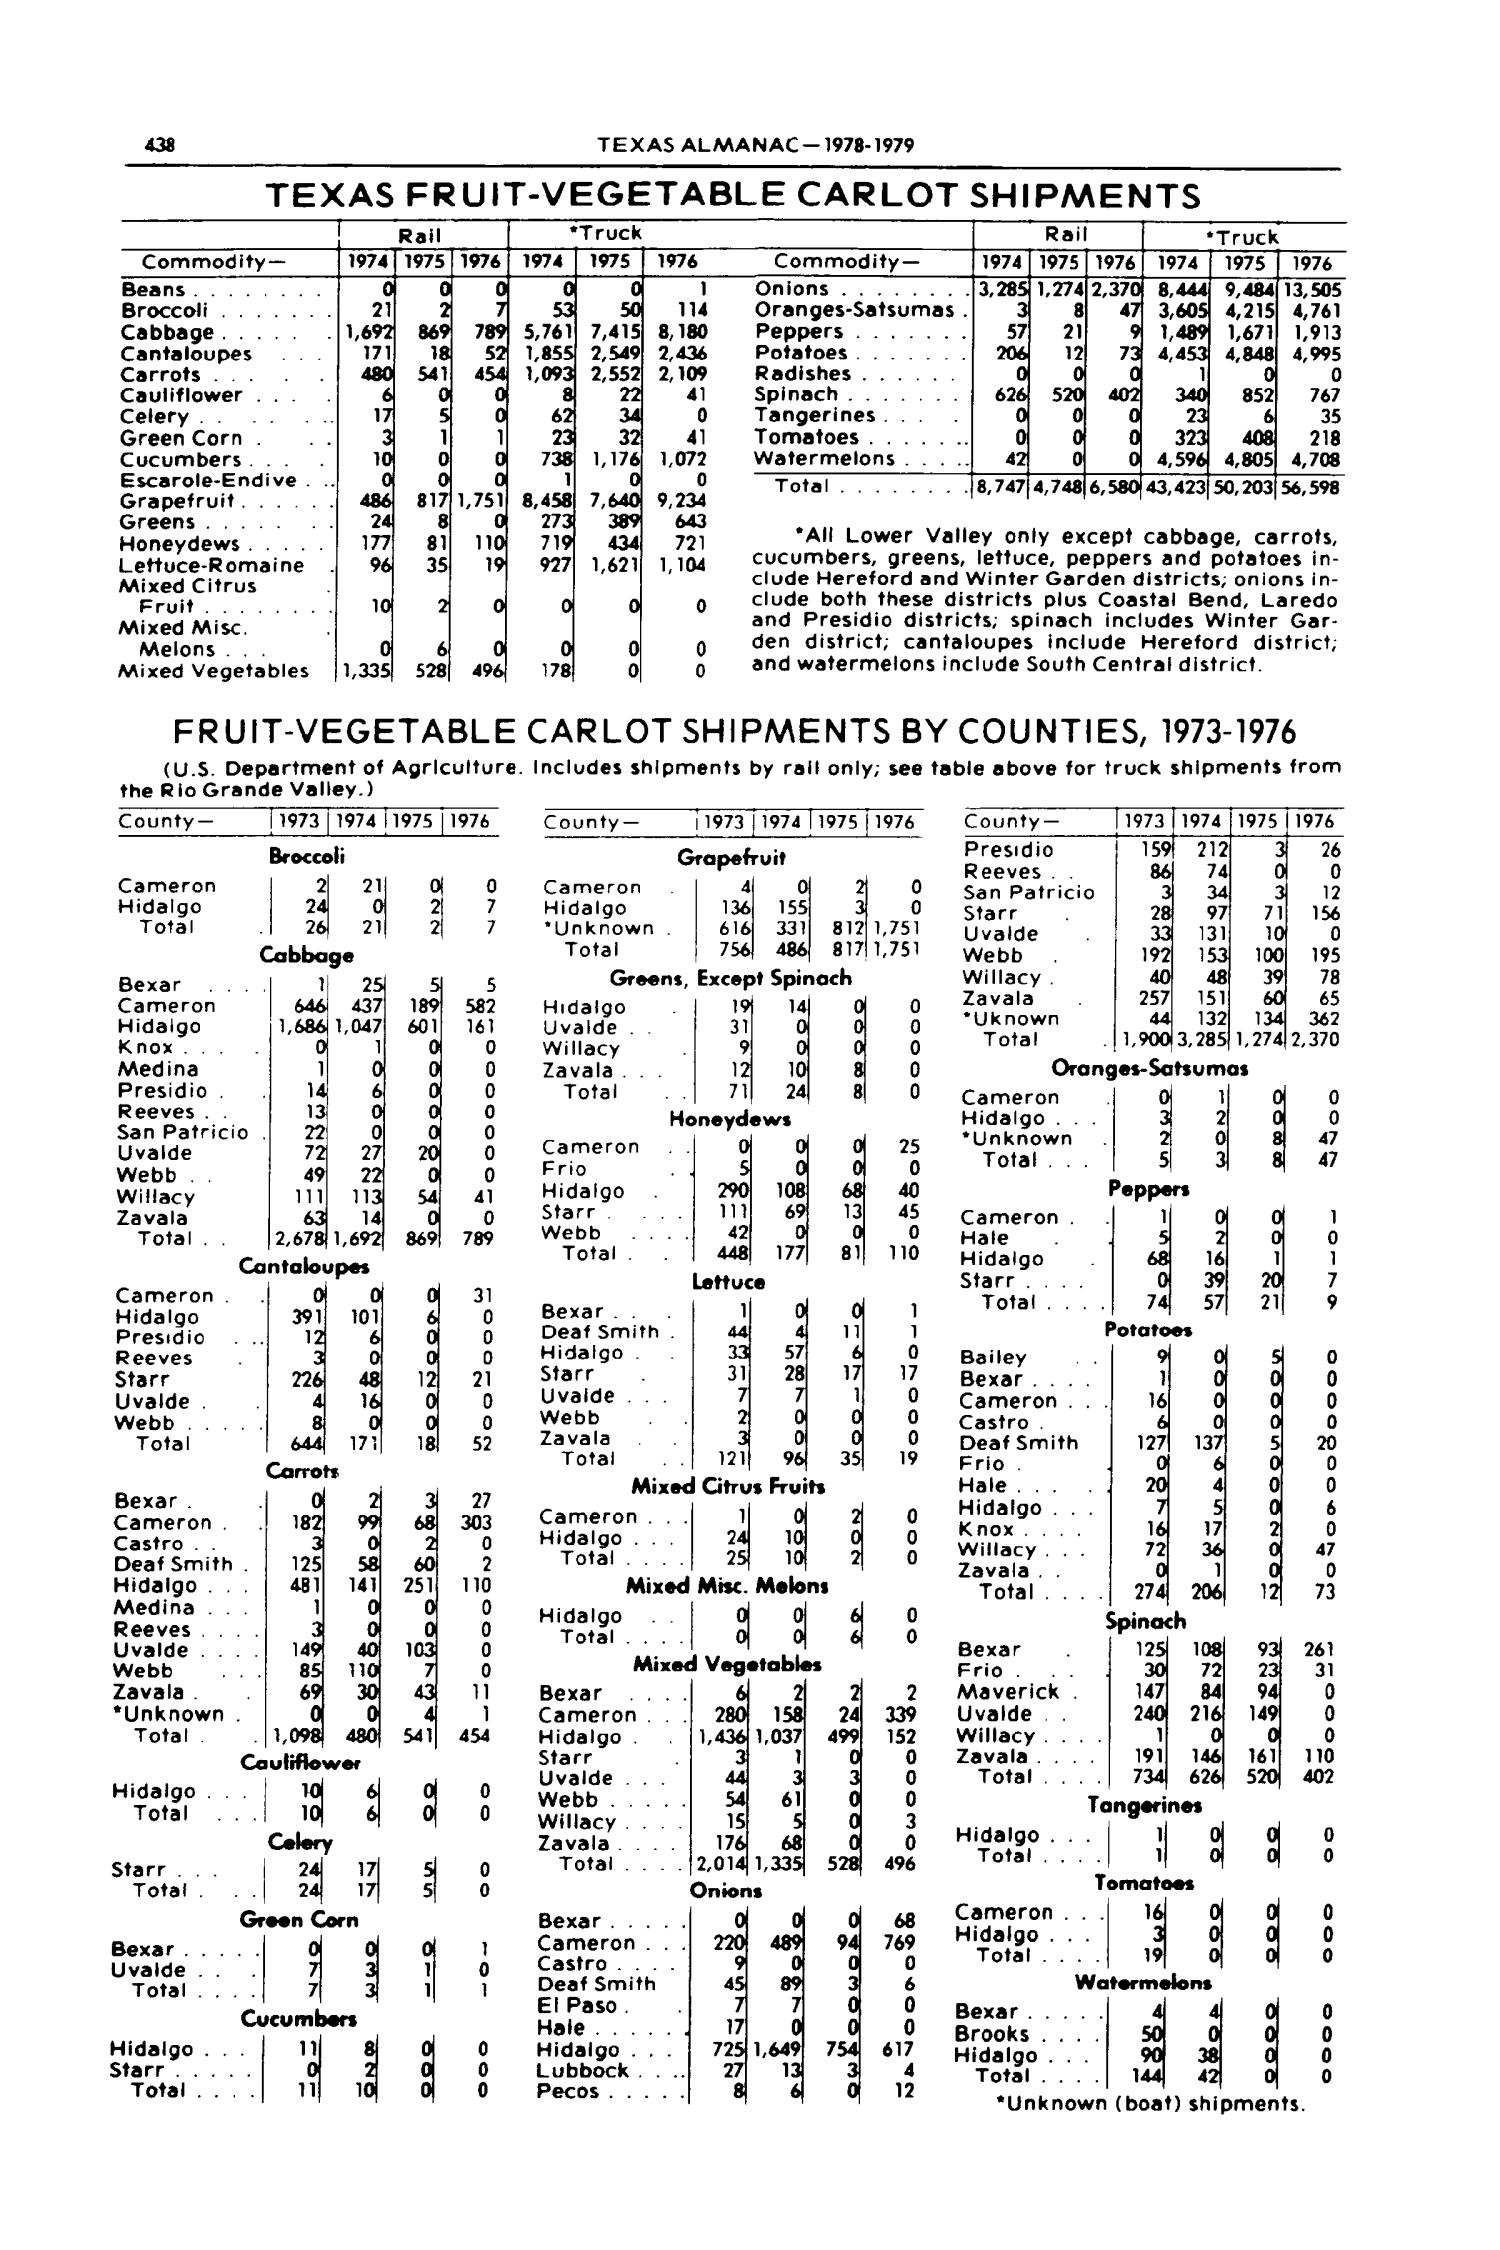 Texas Almanac, 1978-1979
                                                
                                                    438
                                                